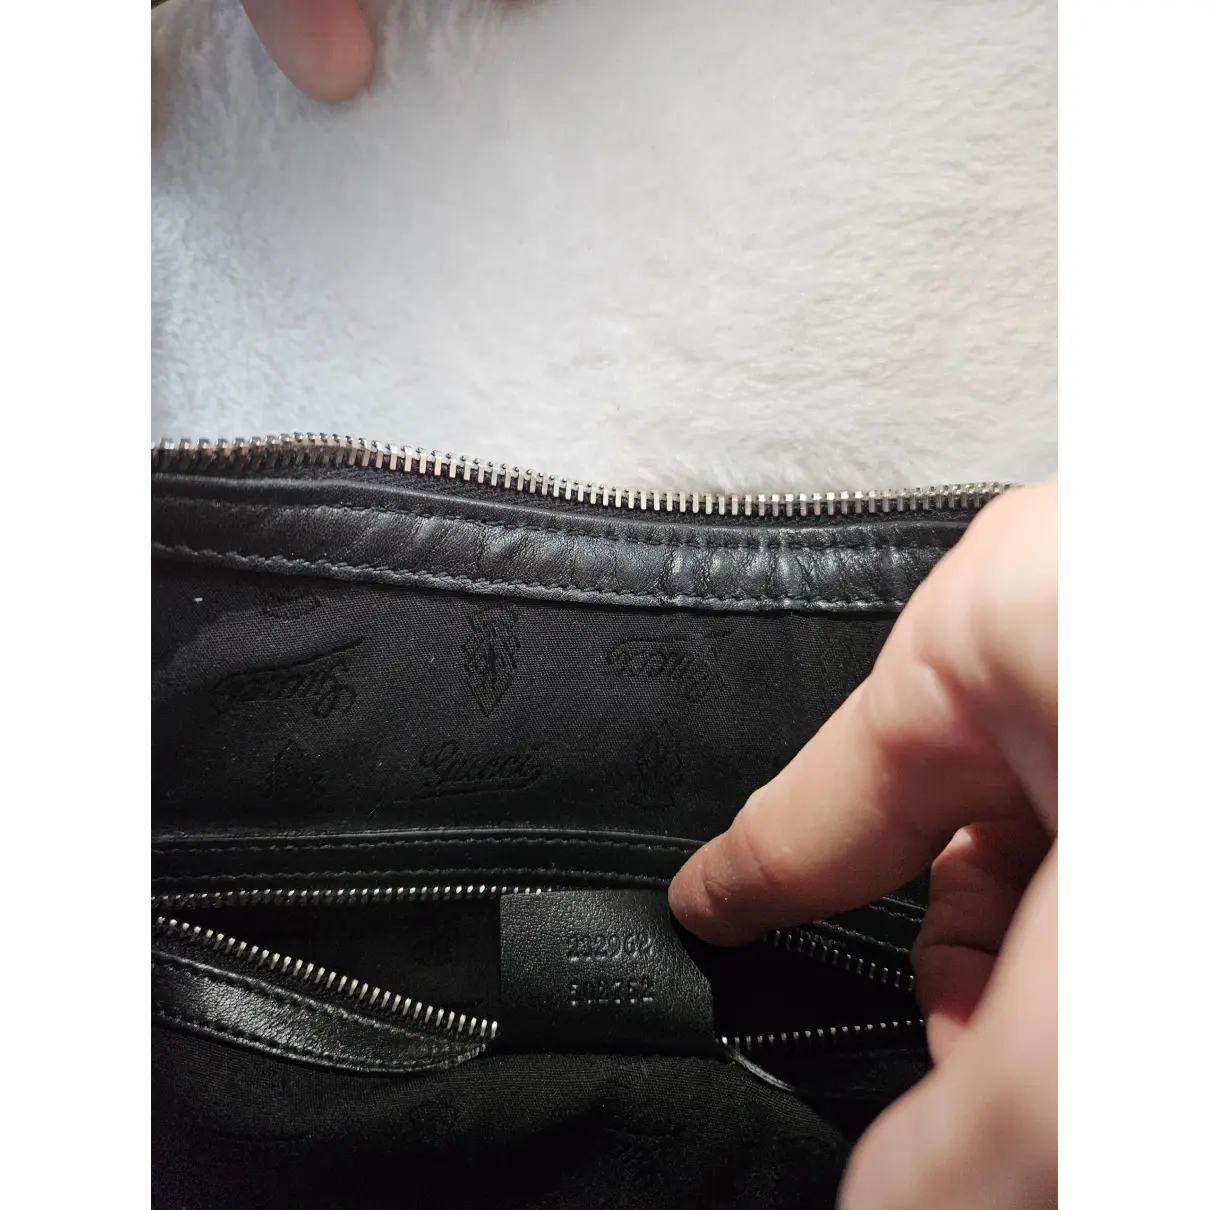 Buy Gucci Hobo leather handbag online